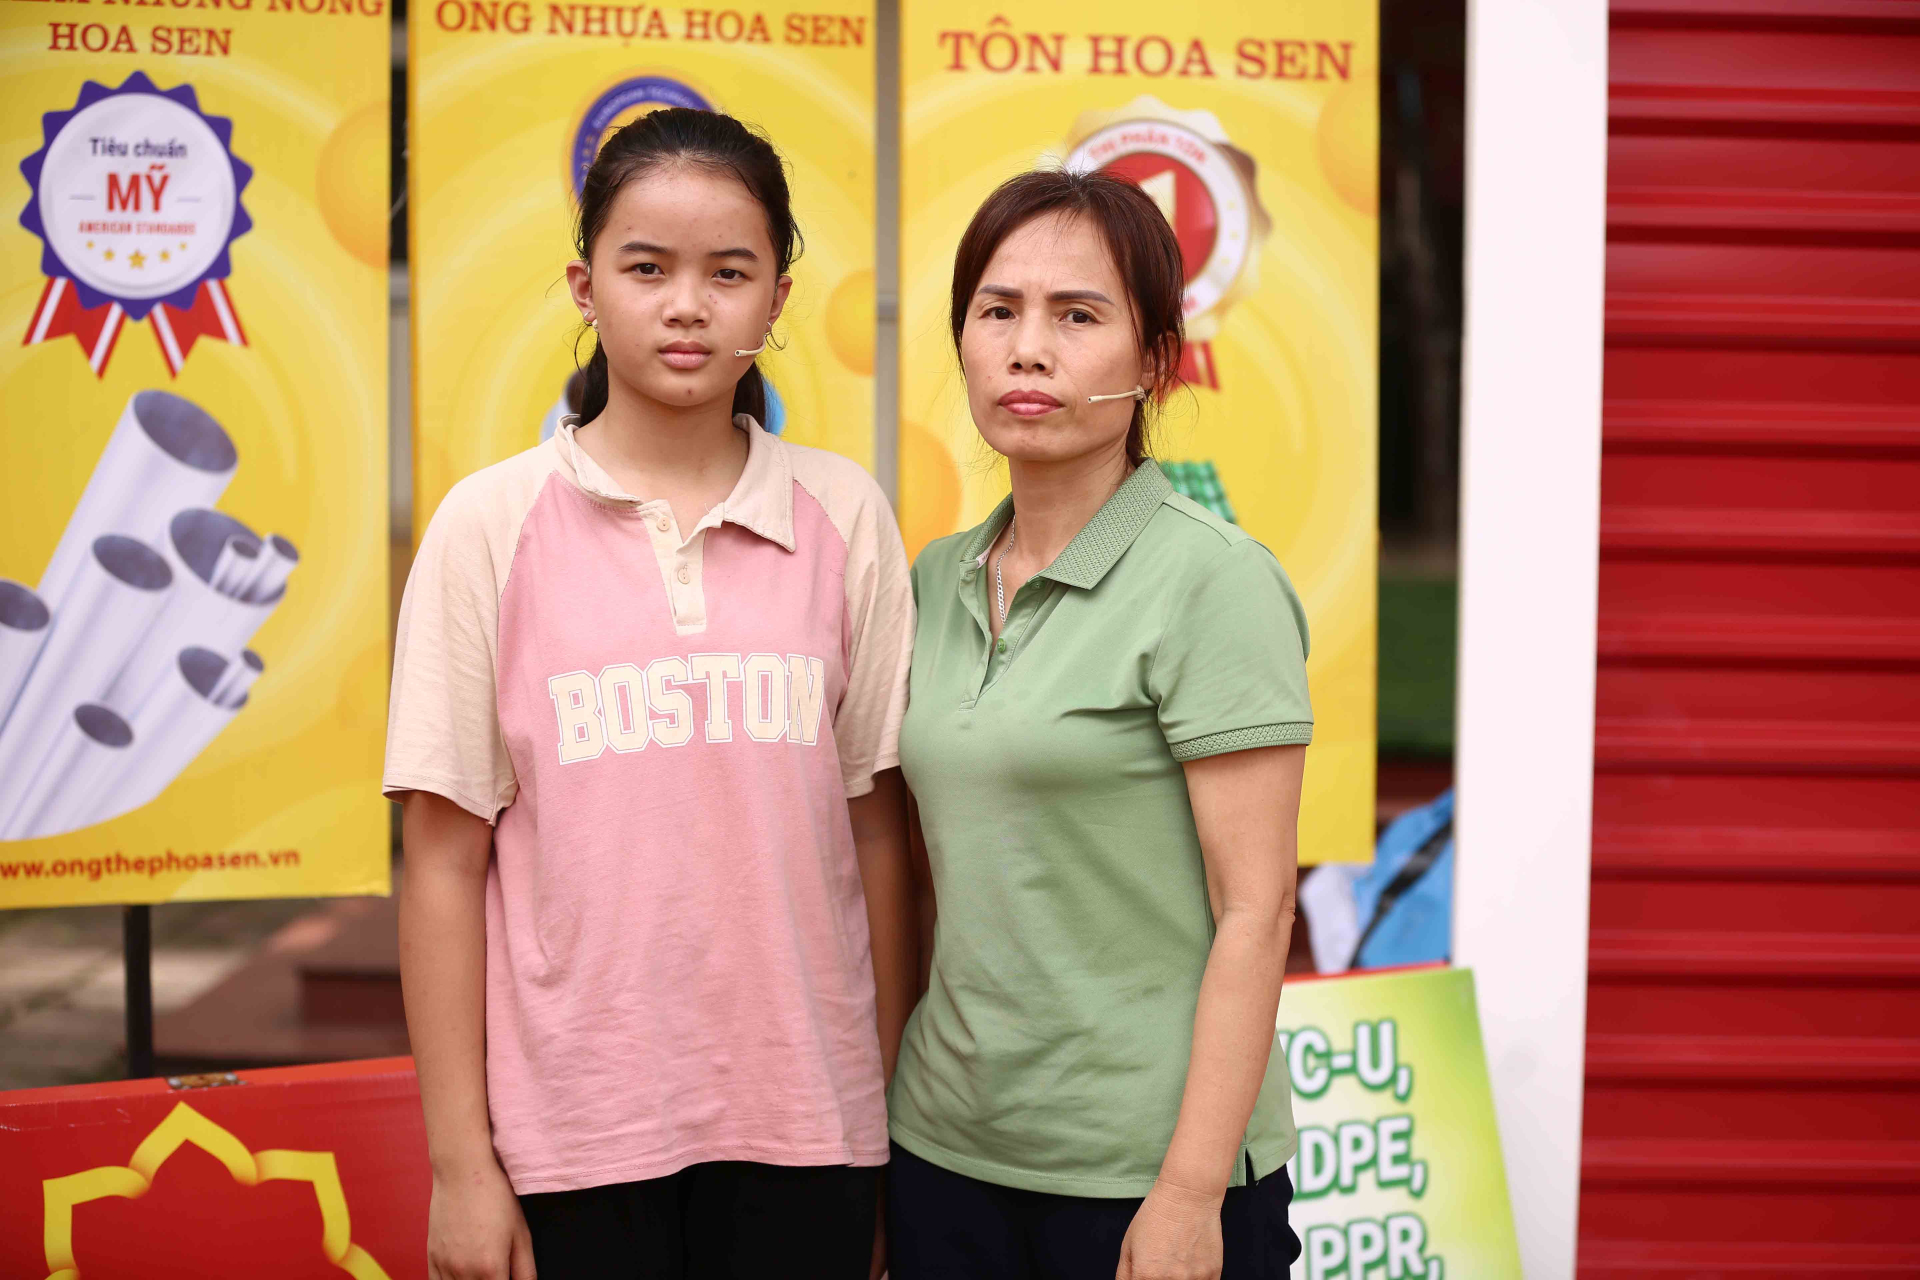 MC Quyền Linh, ca sĩ Kay Trần và ca sĩ LyLy xúc động khi chứng kiến hoàn cảnh của các em nhỏ mồ côi - ảnh 4